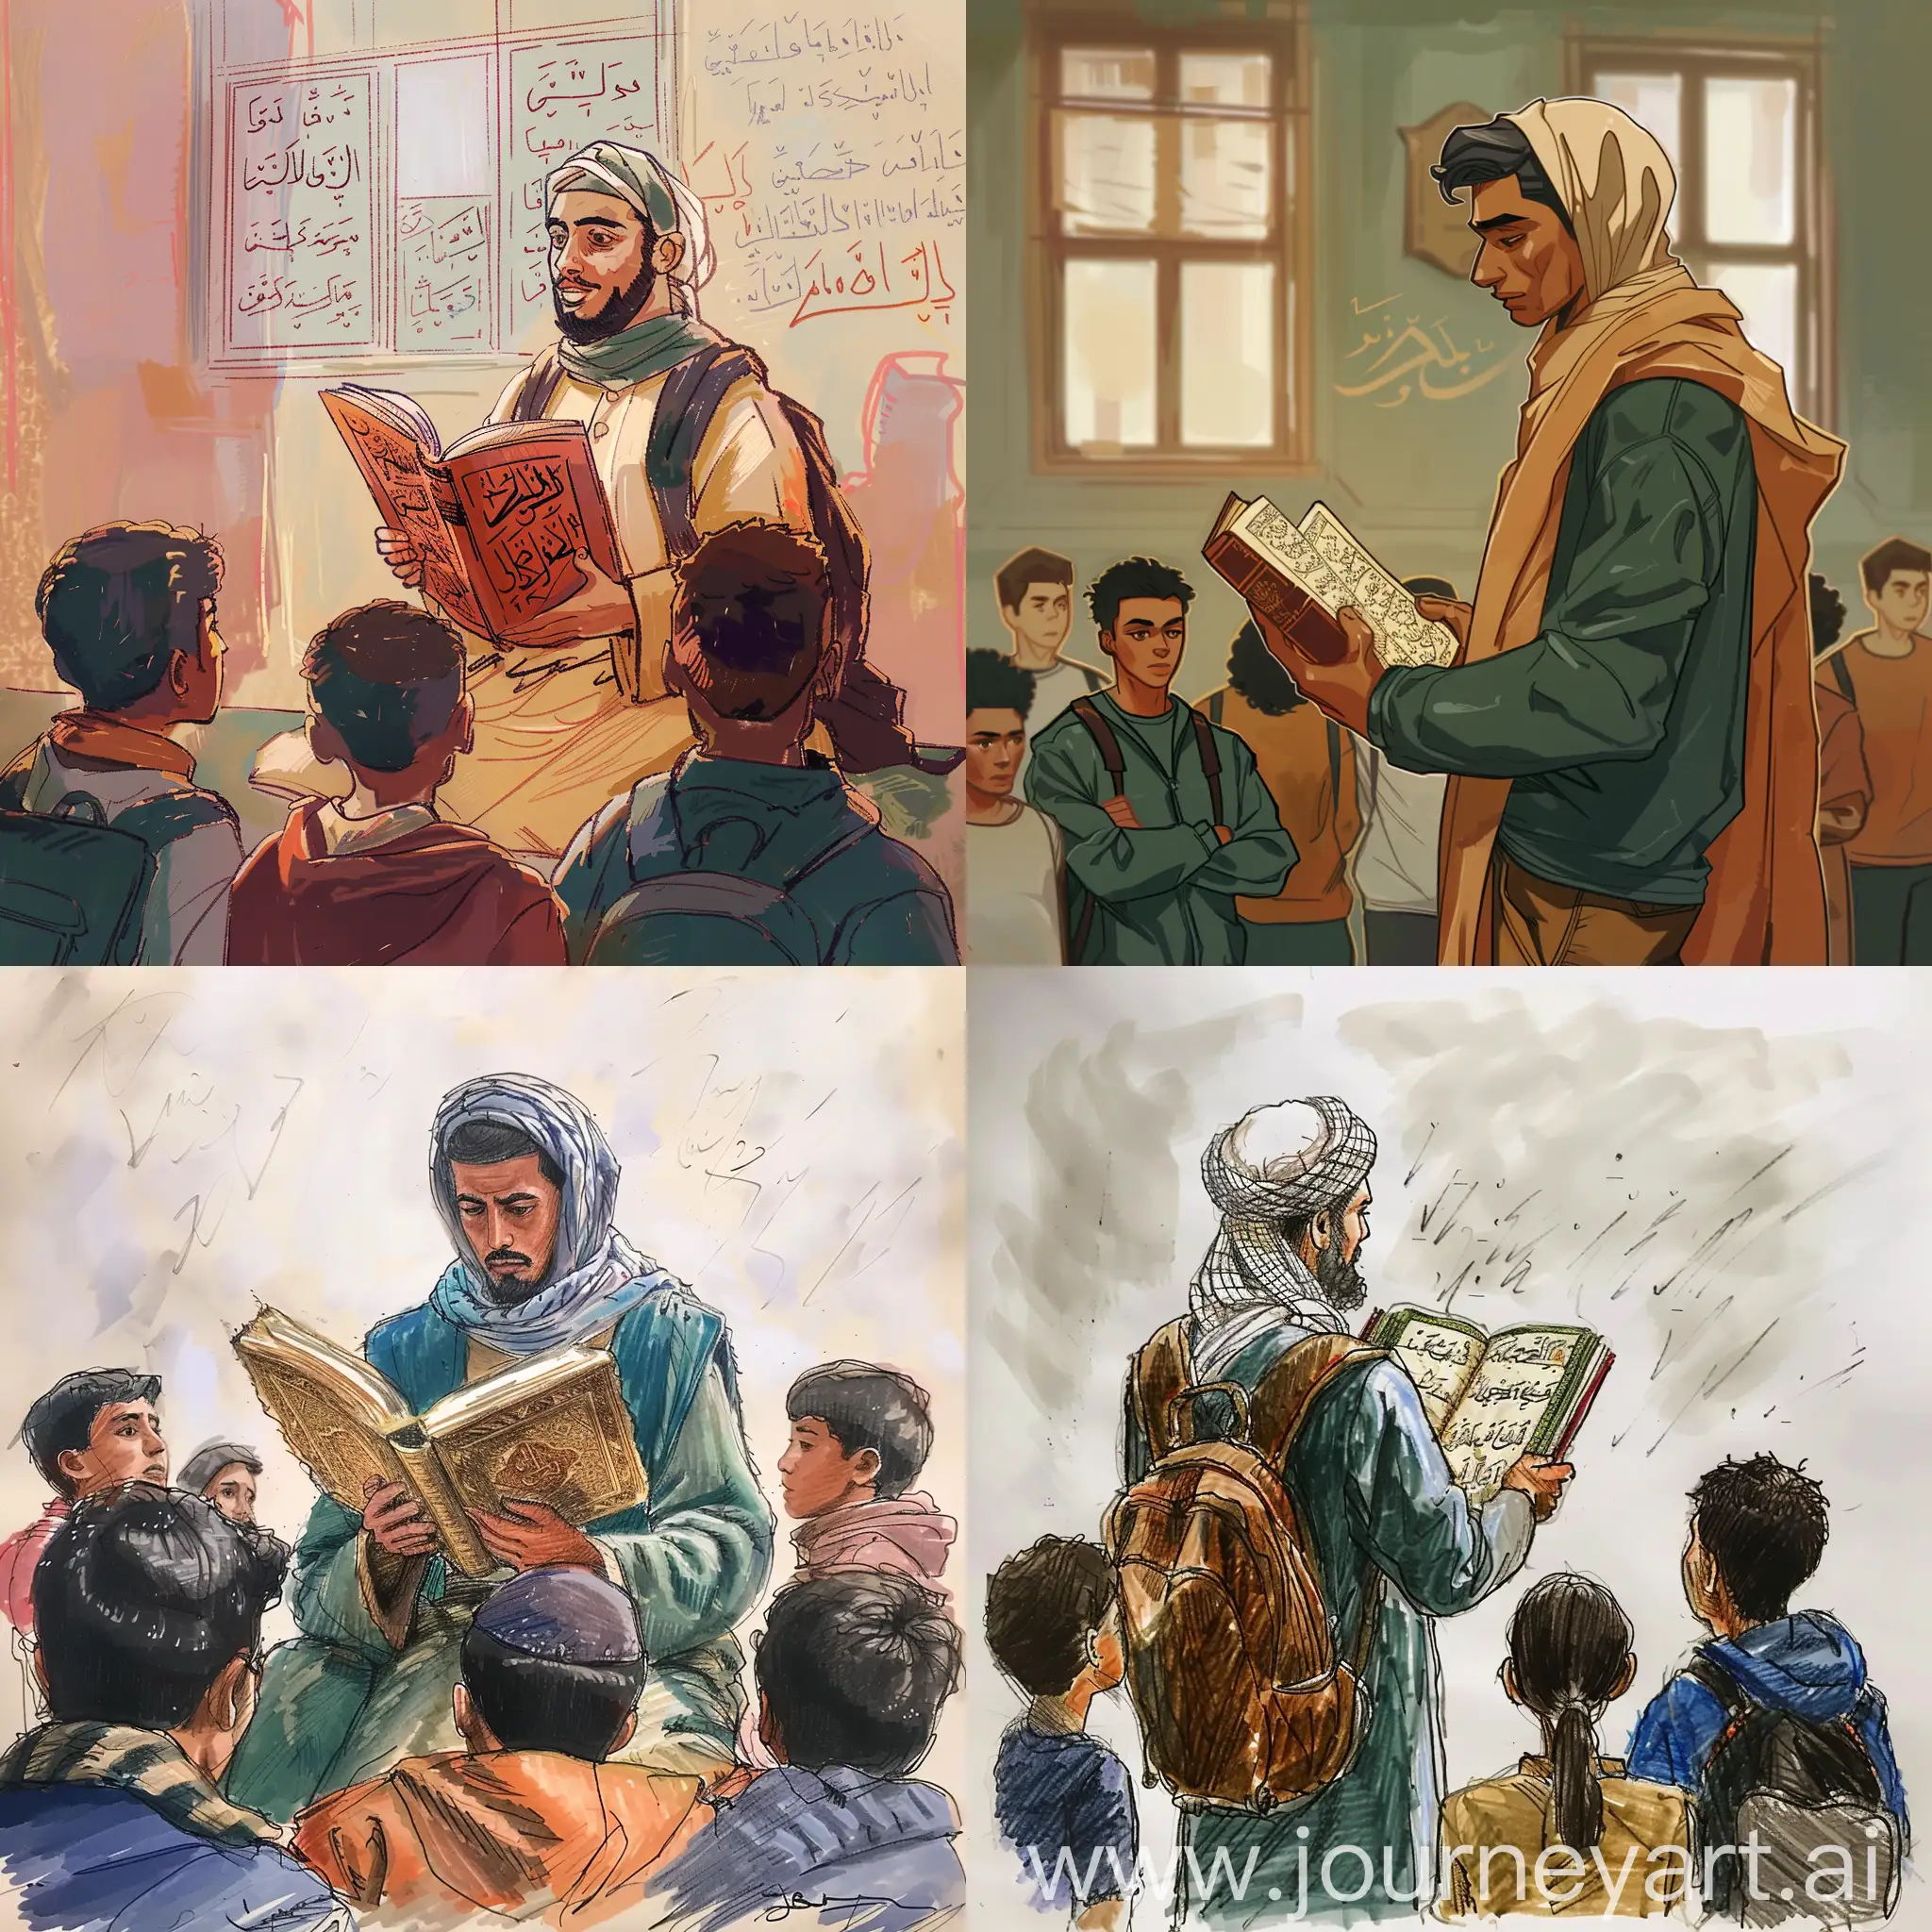 ارسم لي مغربي يقرا القران امام مجموعة من الطلاب 